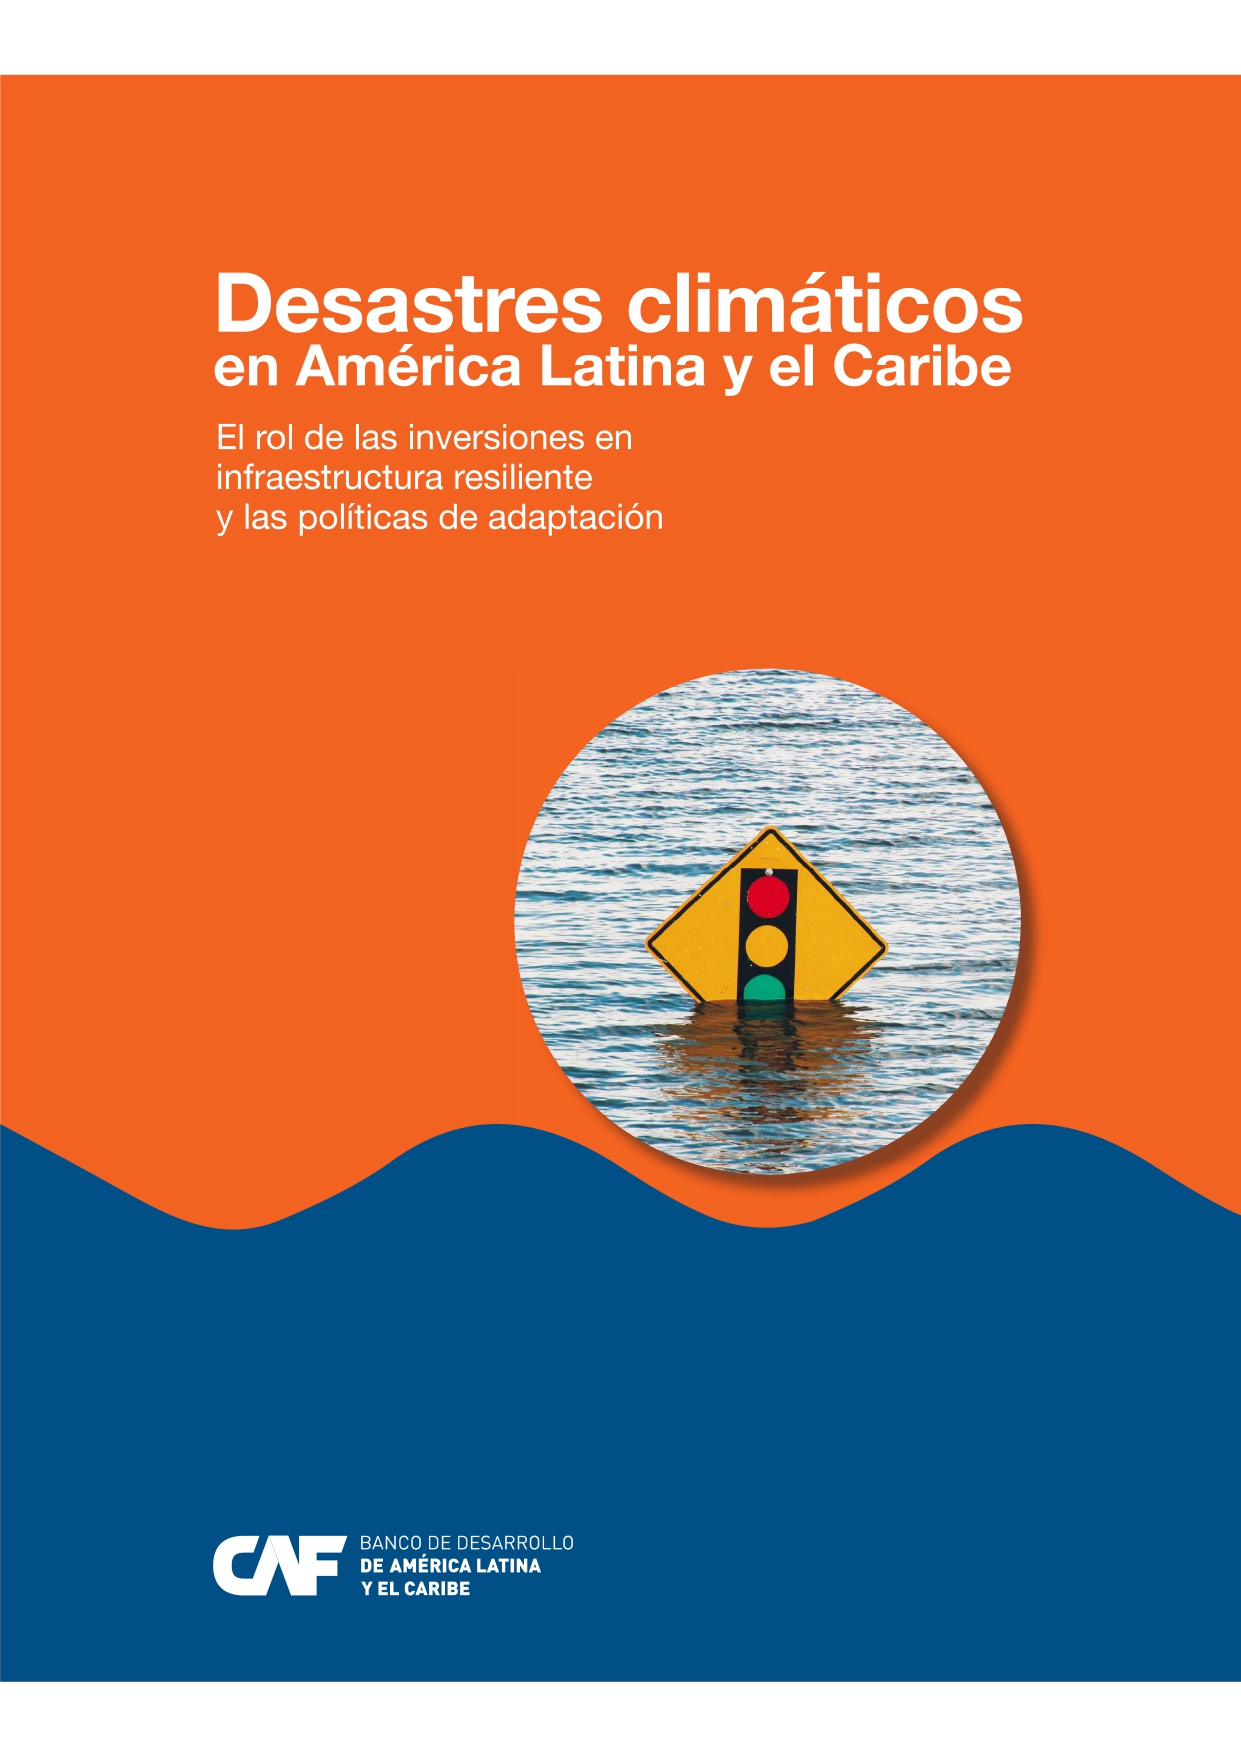 Desastres climáticos en América Latina y el Caribe: el rol de las inversiones en infraestructura resiliente y las políticas de adaptación